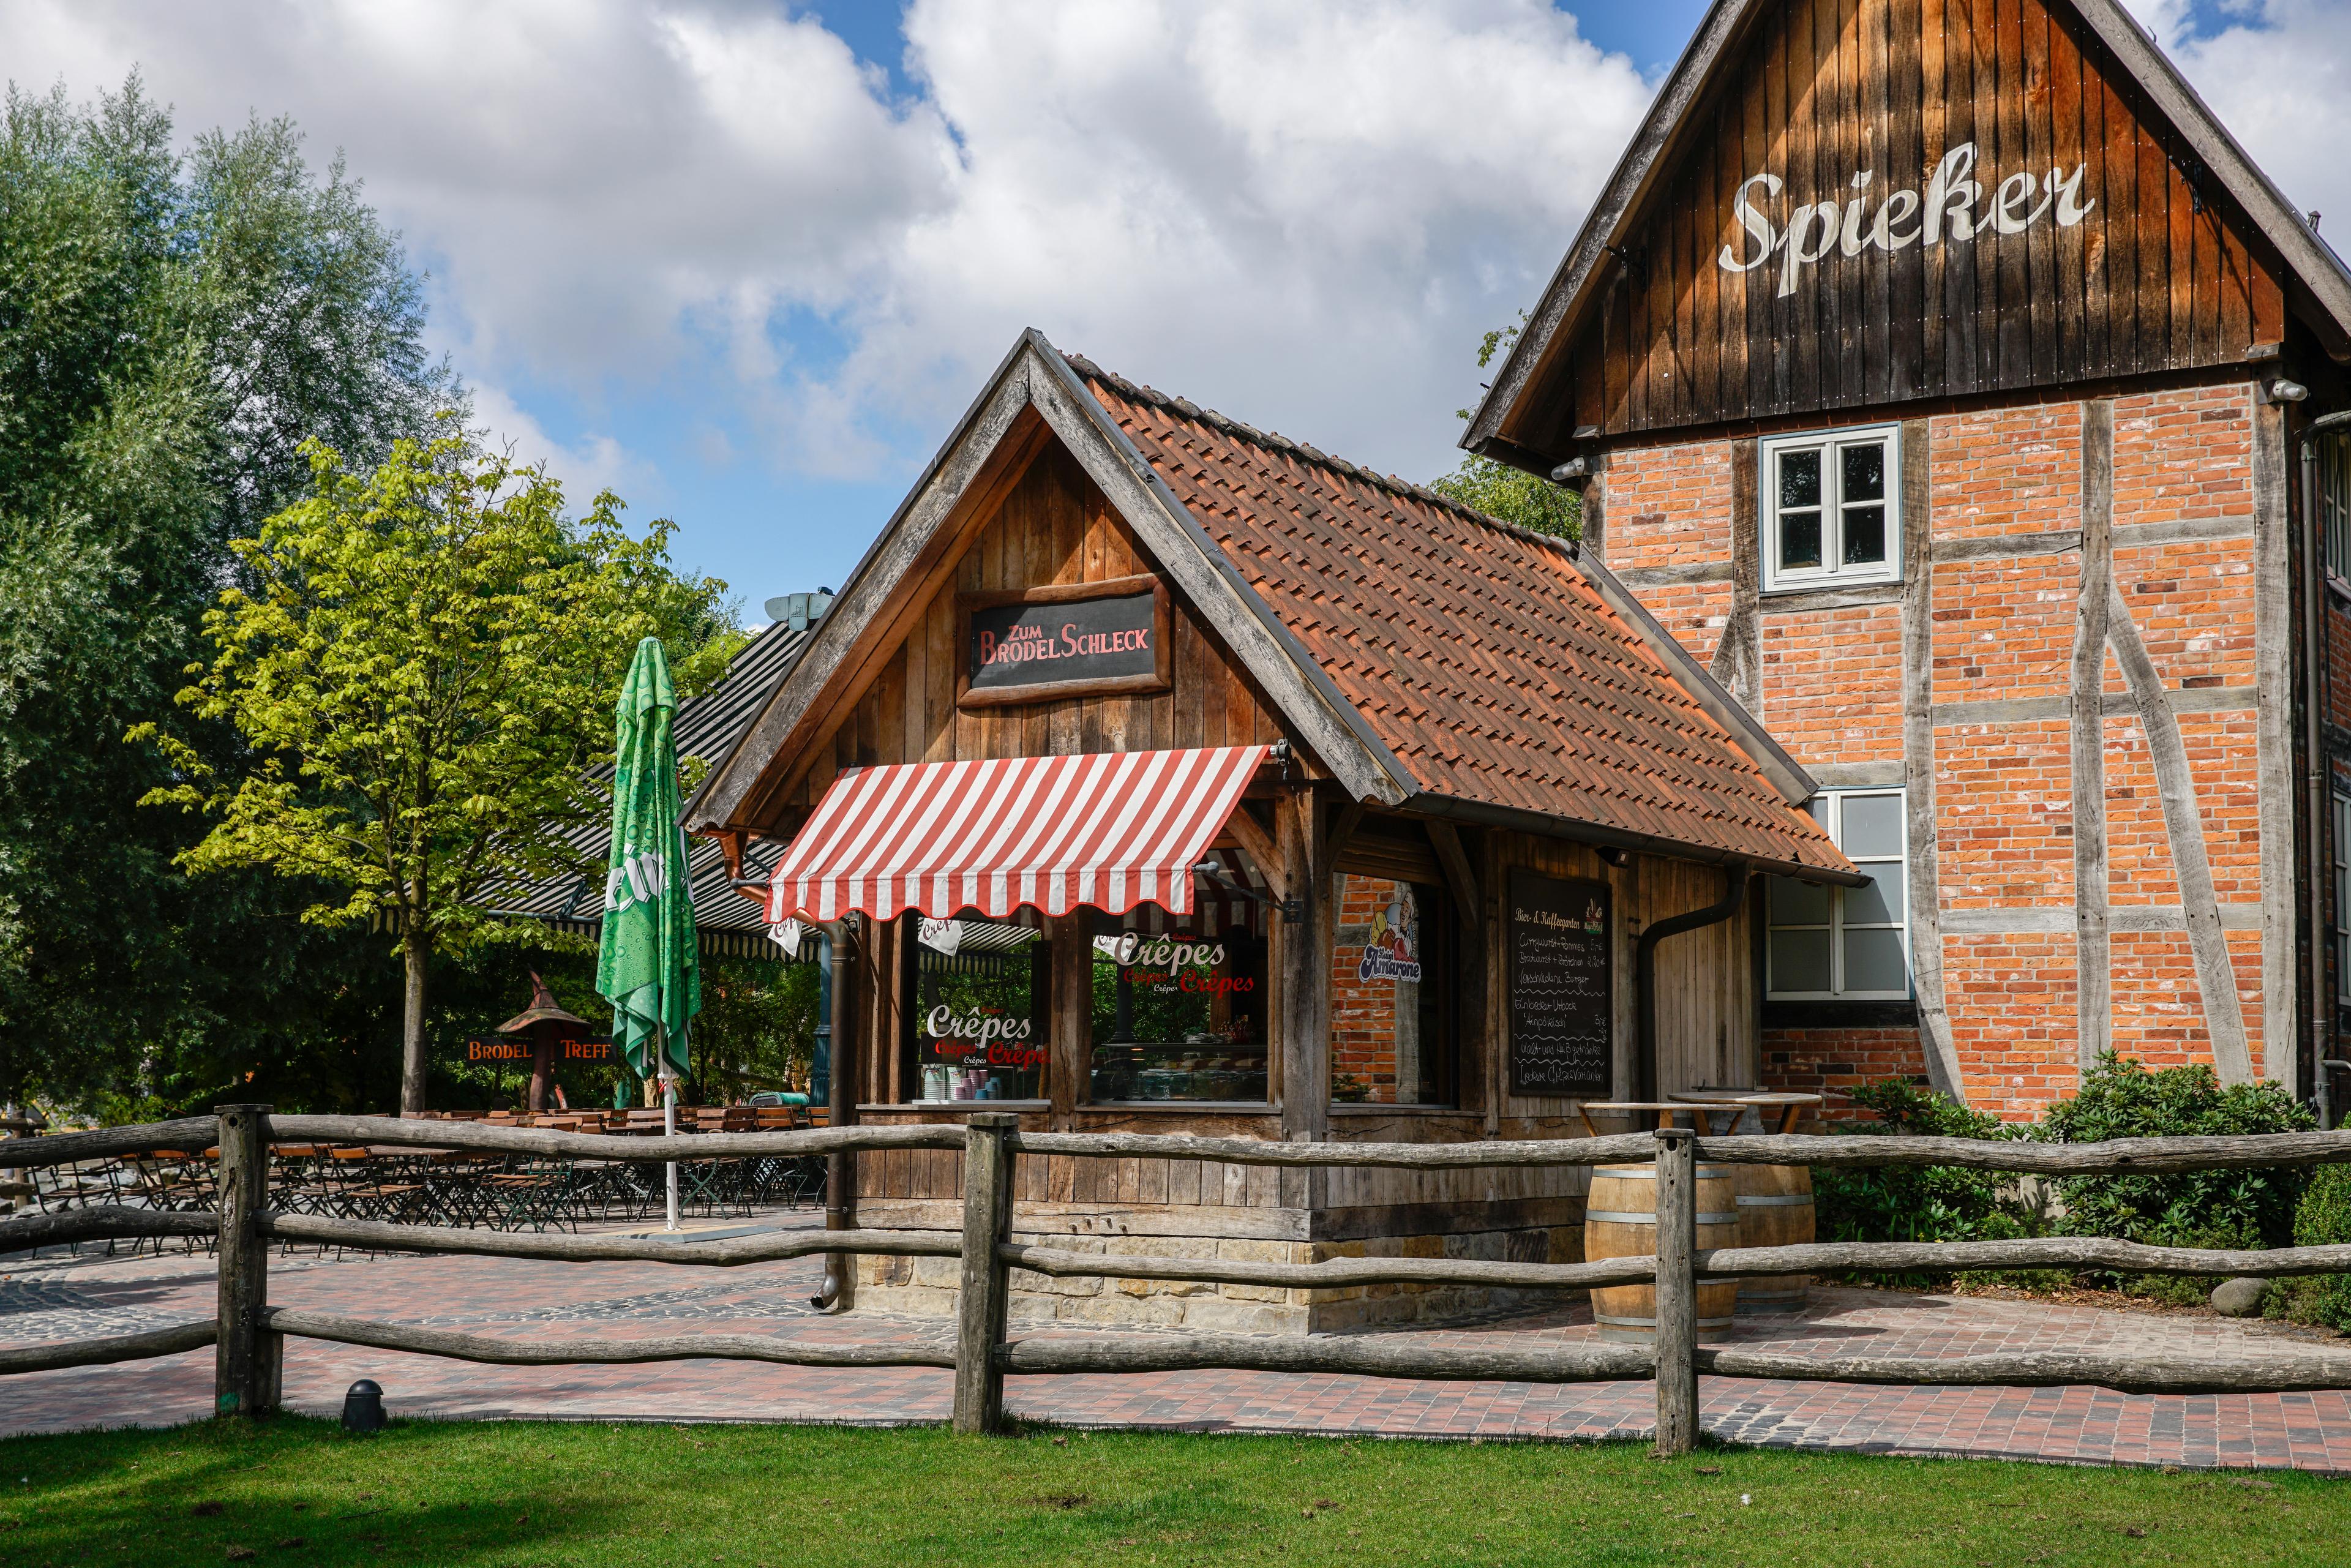 Imbiss "Spieker" eingebettet in authentisch-rustikale Bauernhof-Gebäude